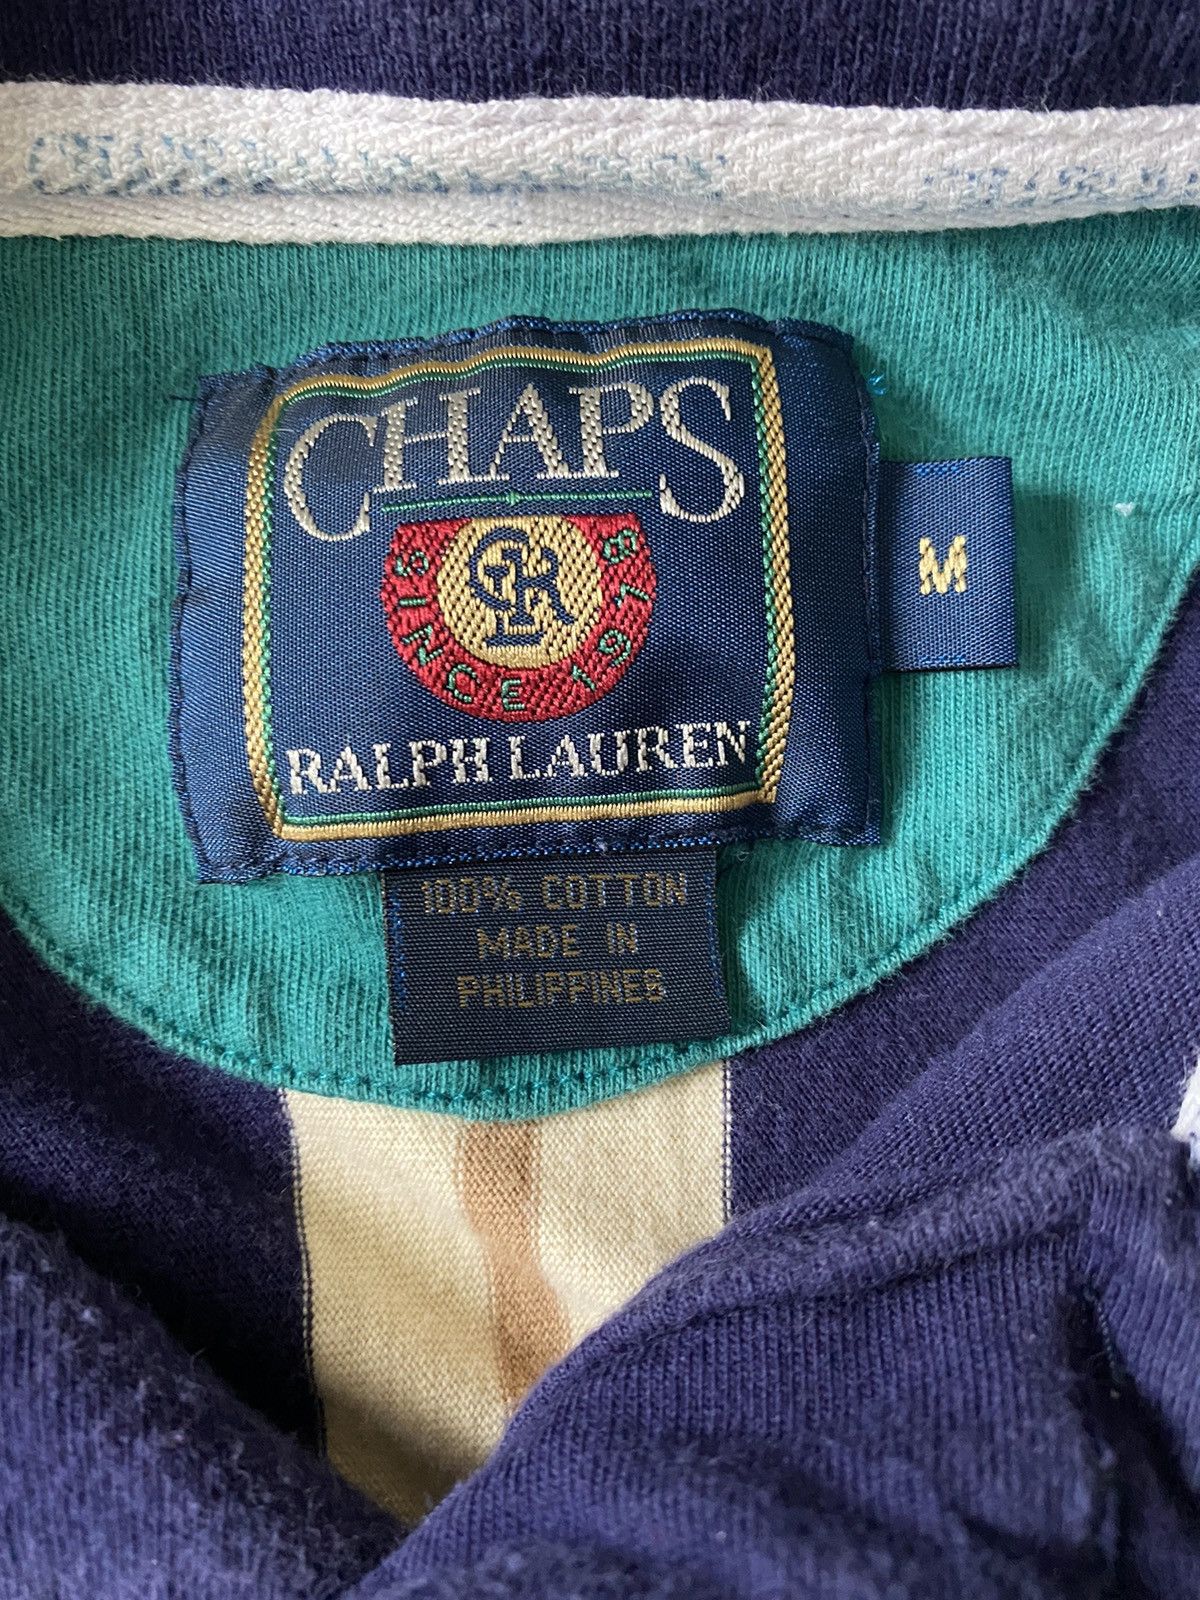 Vintage Vintage Chaps Ralph Lauren polo Size US M / EU 48-50 / 2 - 5 Preview